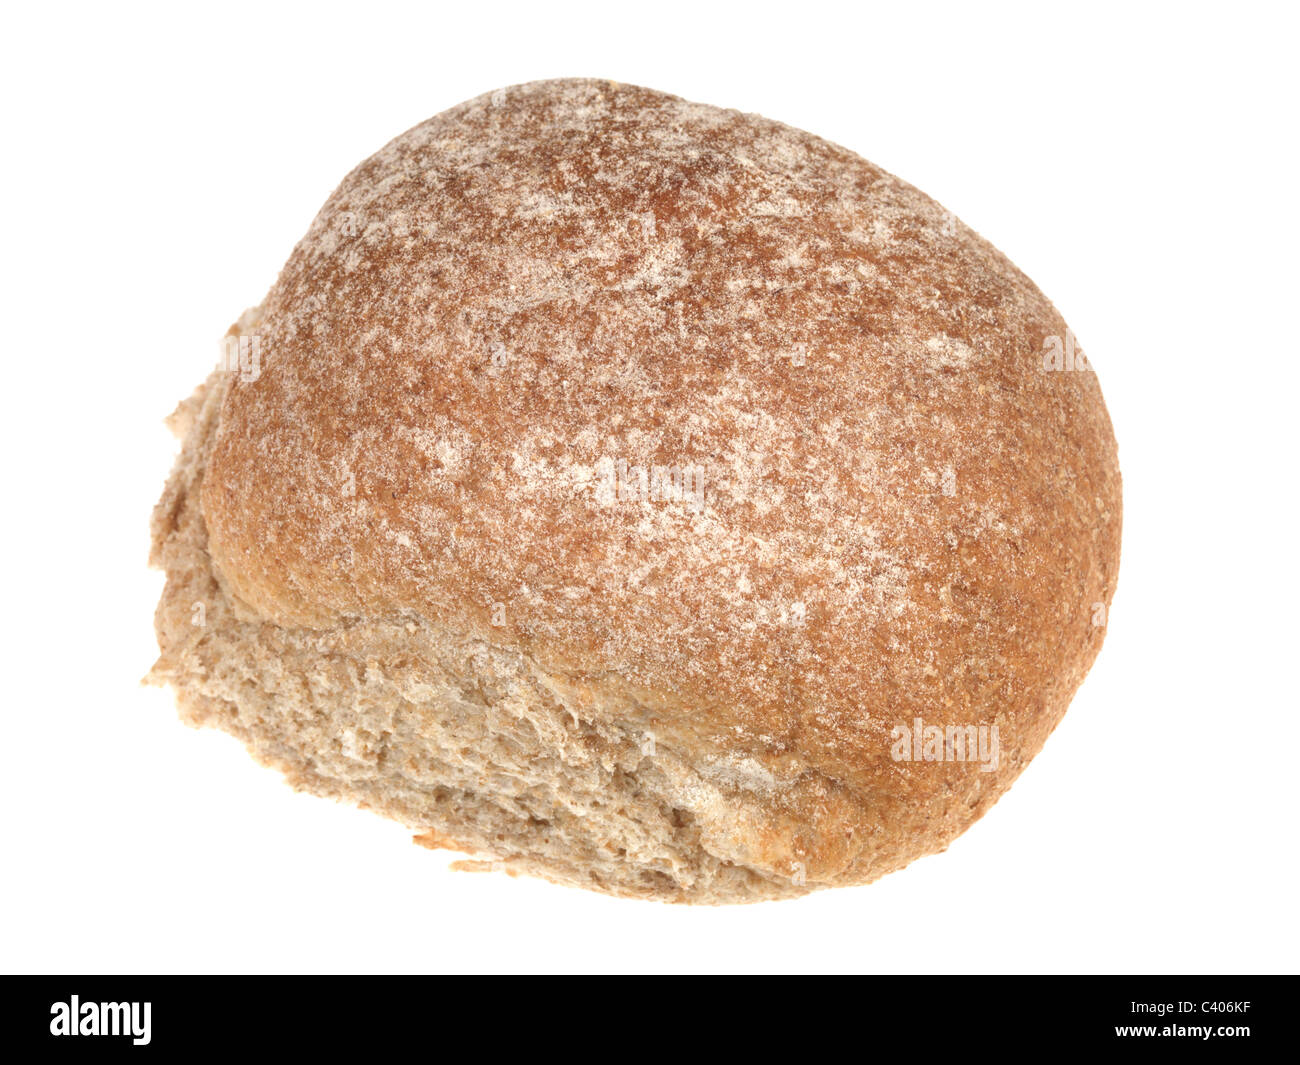 Pane appena sfornato morbido pane marrone rotolo con nessun riempimento contro uno sfondo bianco con un tracciato di ritaglio e nessun popolo Foto Stock